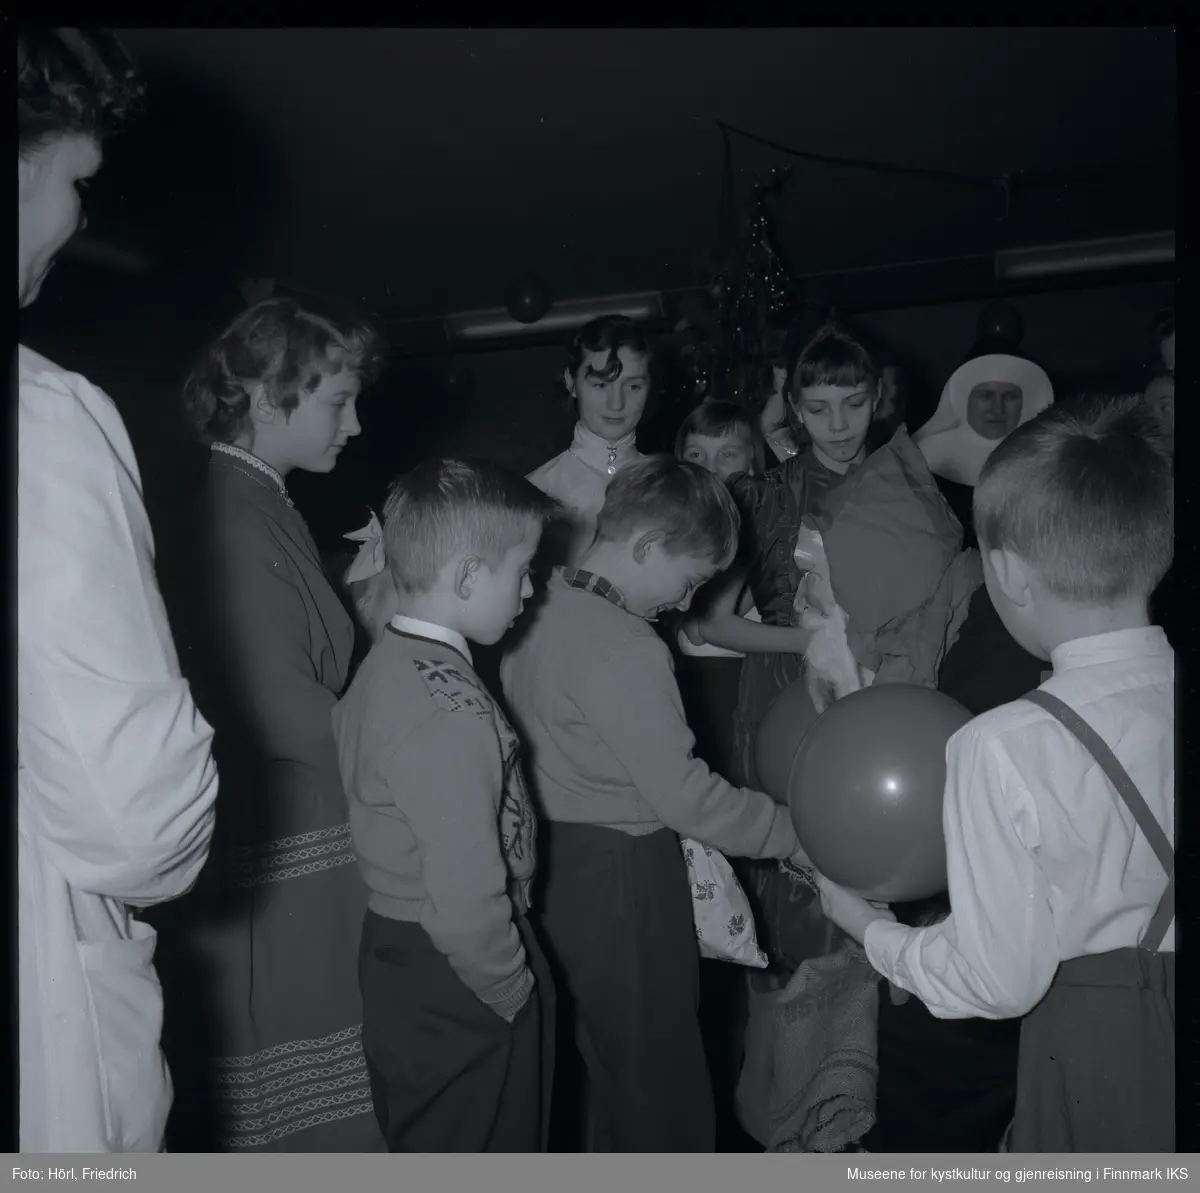 Den katolske menigheten i Hammerfest feirer juletrefest i 1957. En gutt har fått en gave fra julenissen som snakker til ham mens han slår ned blikket og ler. Andre barn og voksne står rundt dem og følger med.  
I bakgrunnen ser man juletreet og luftballonger.